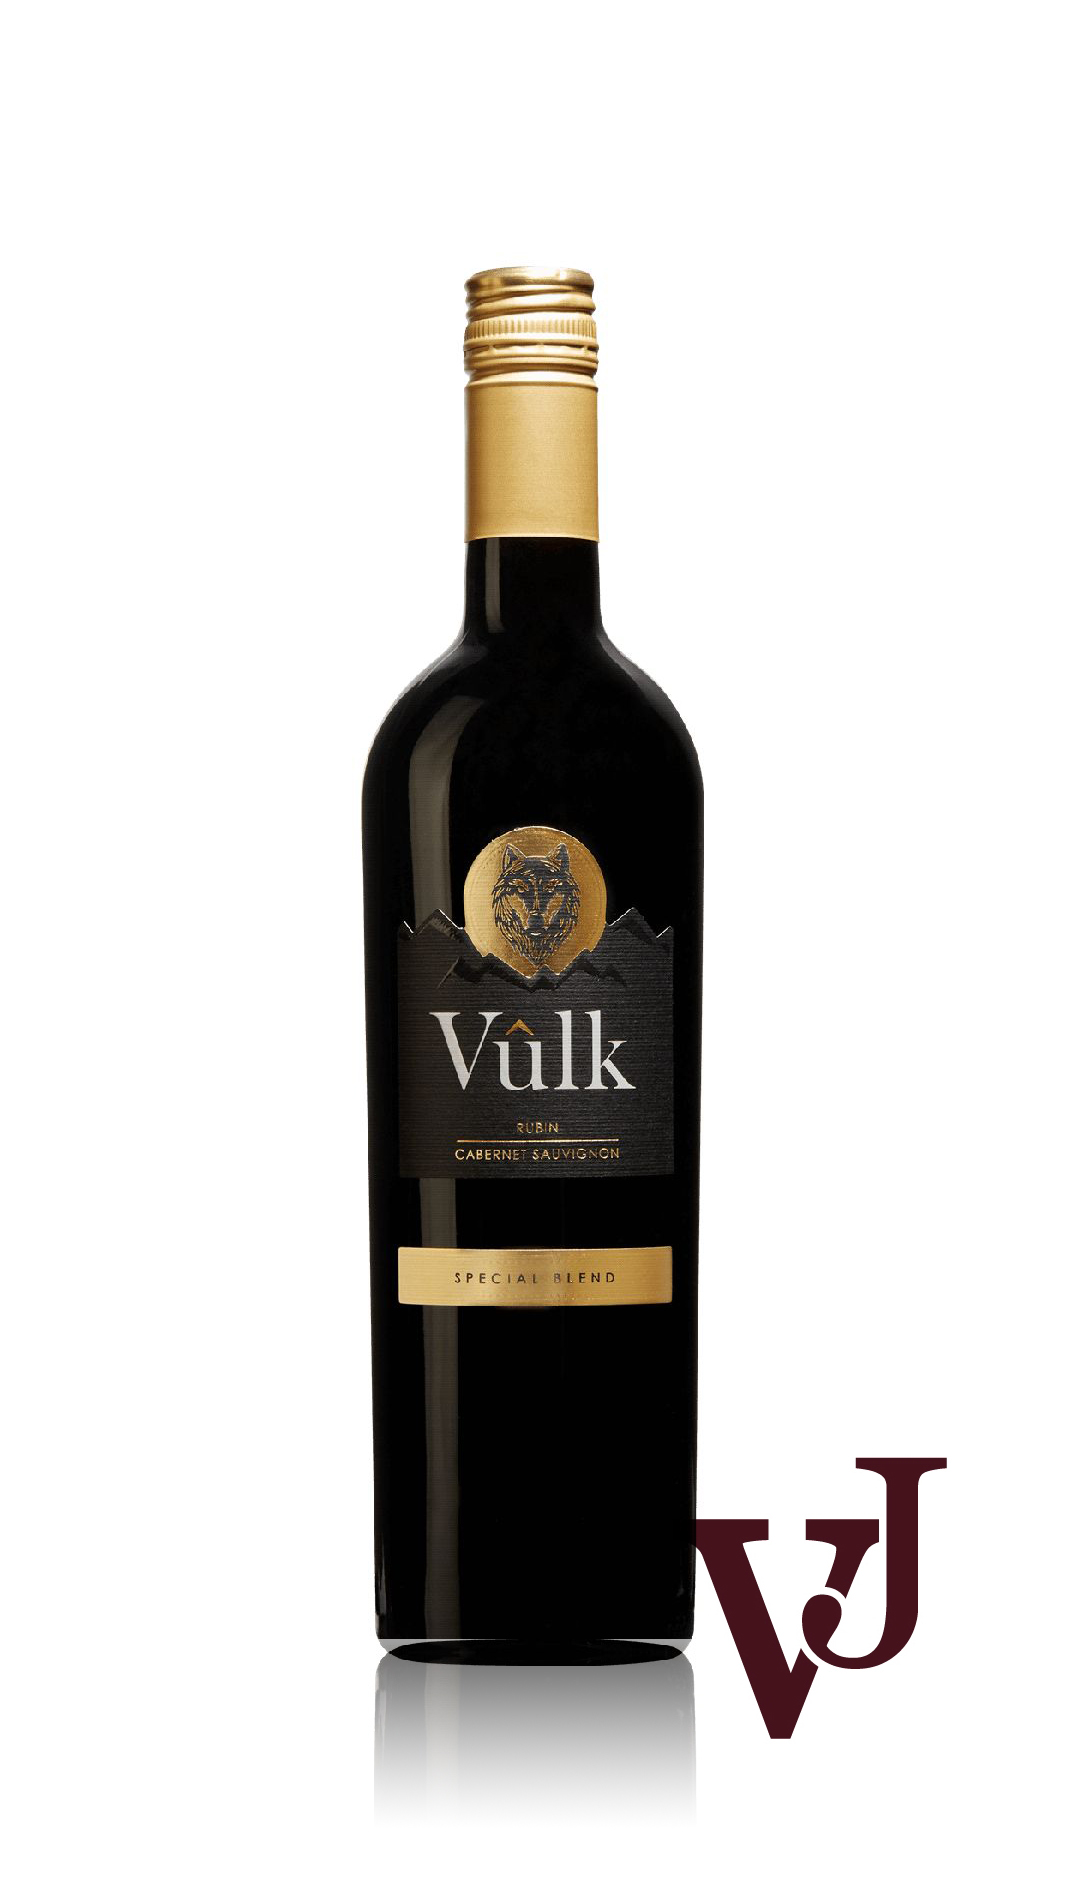 Rött Vin - Vûlk Rubin Cabernet Sauvignon artikel nummer 203701 från producenten Aratus från området Bulgarien